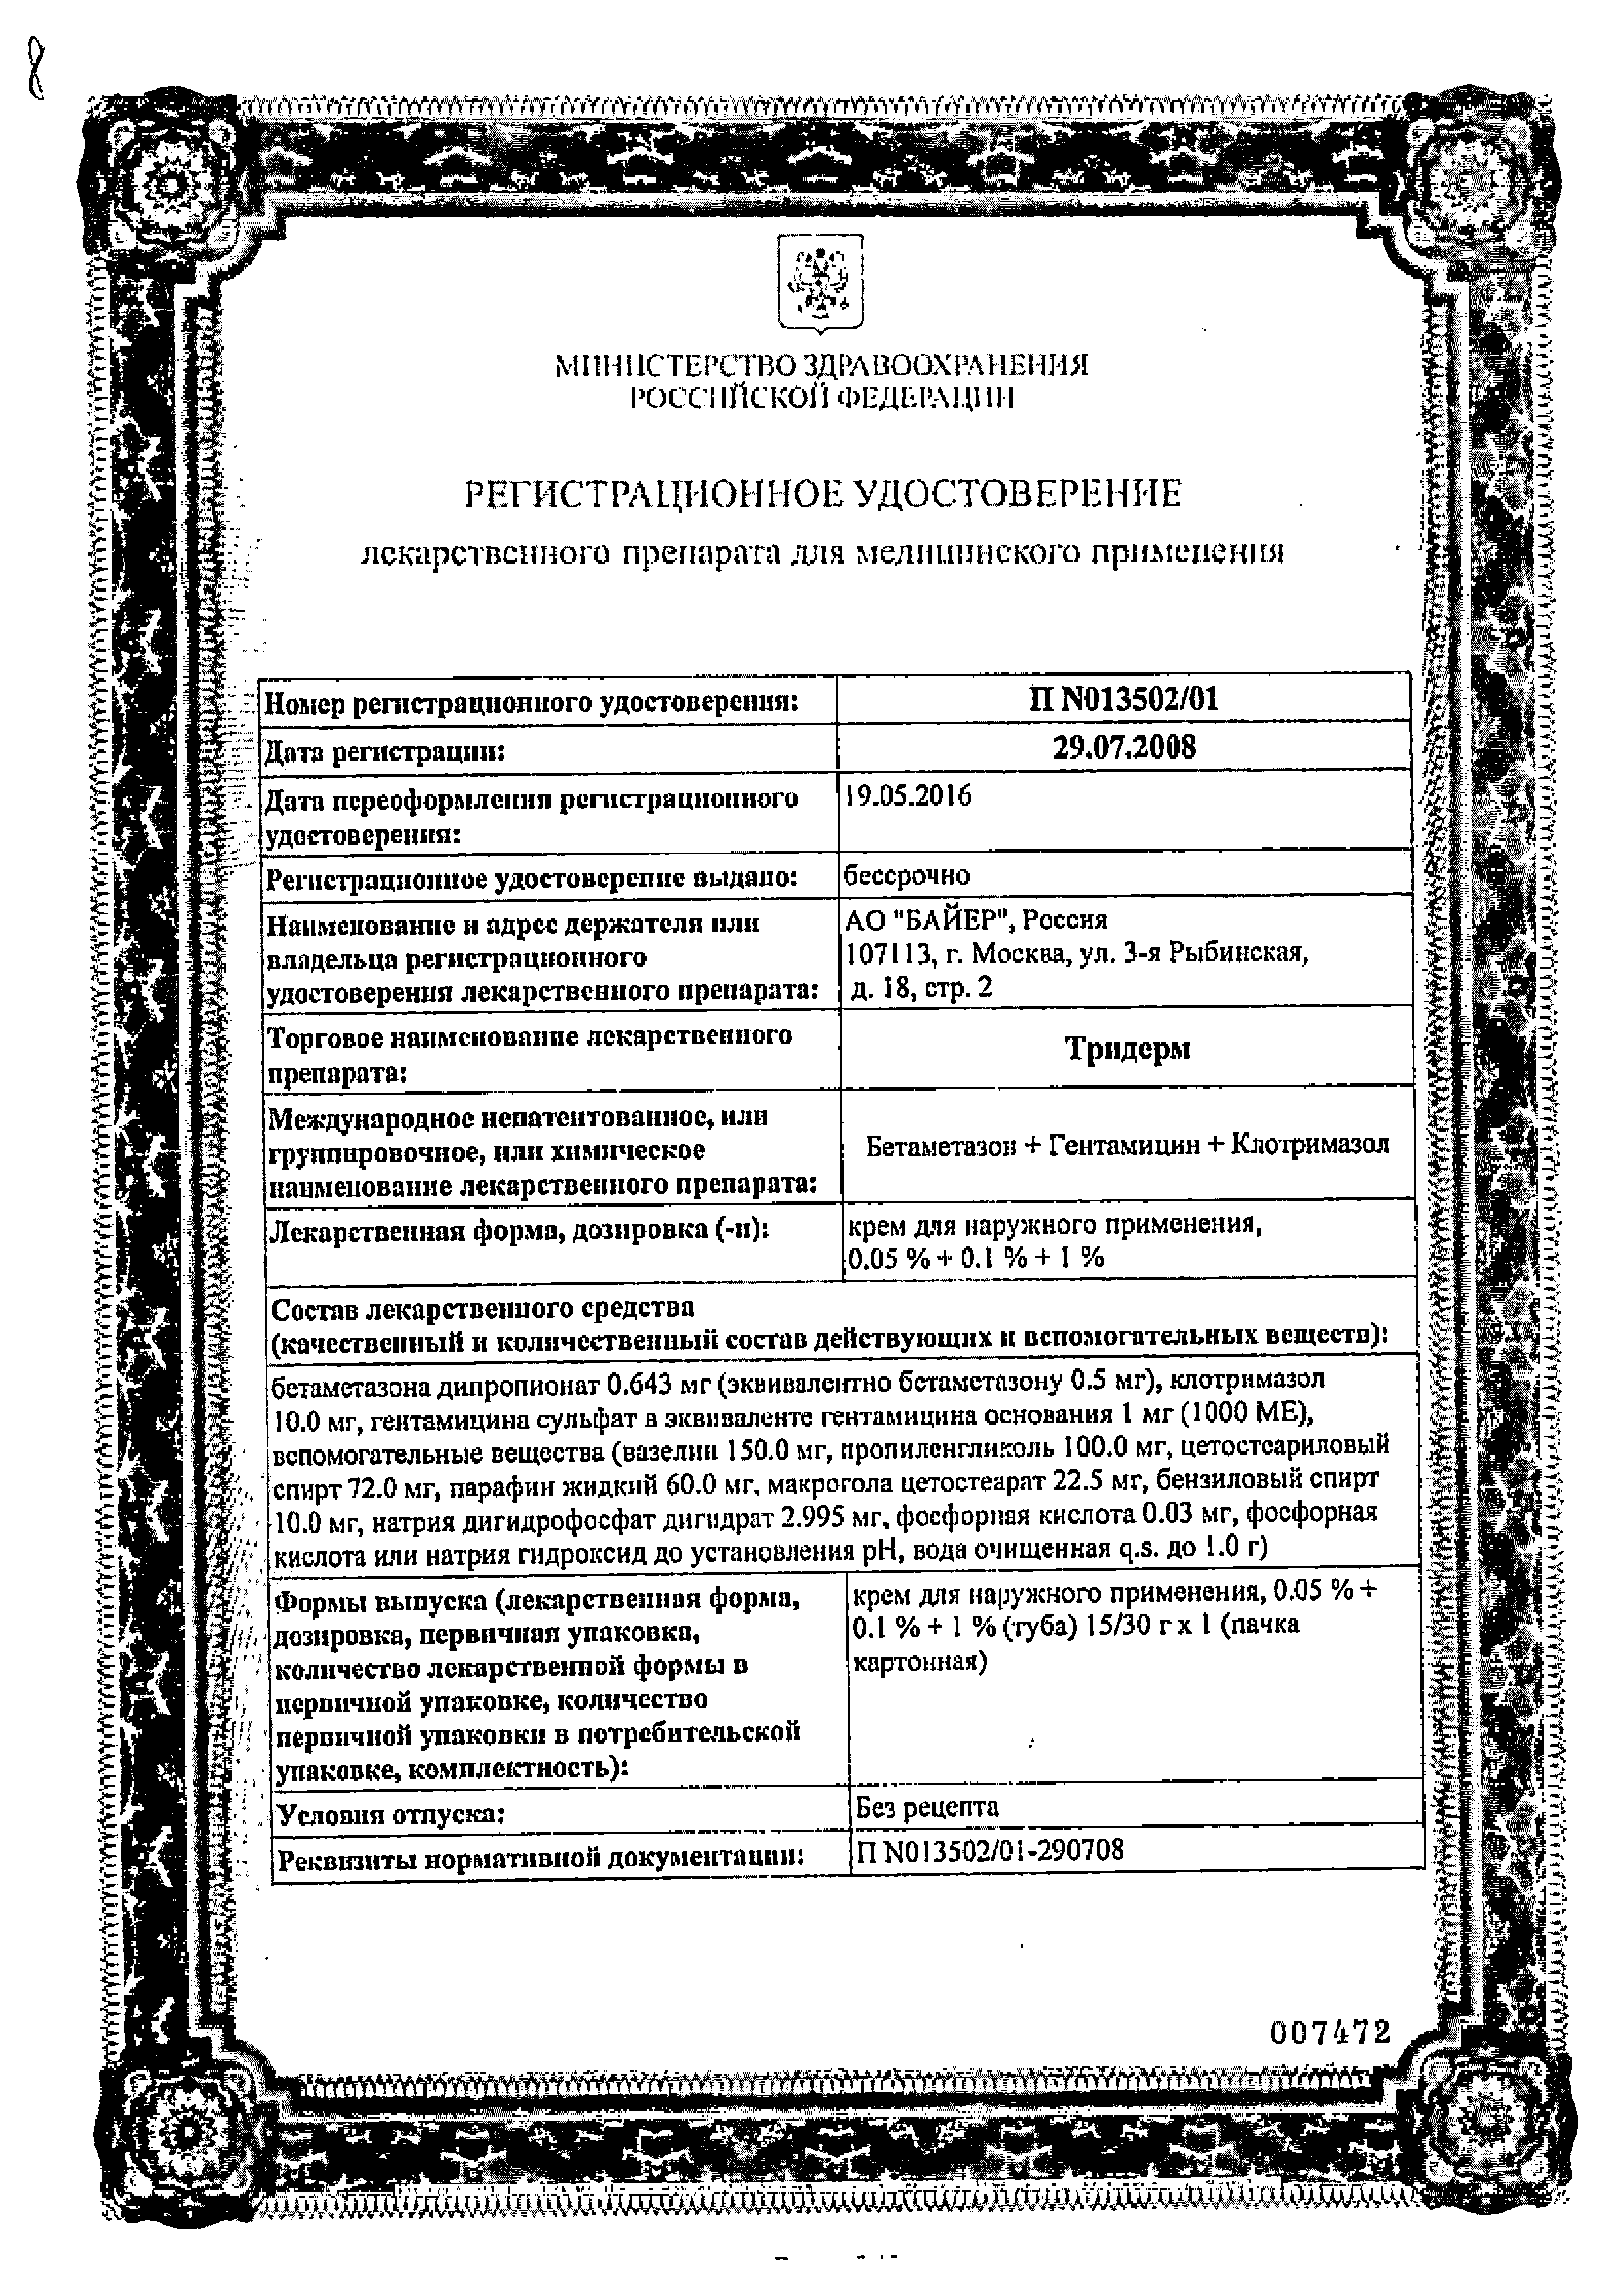 Тридерм сертификат